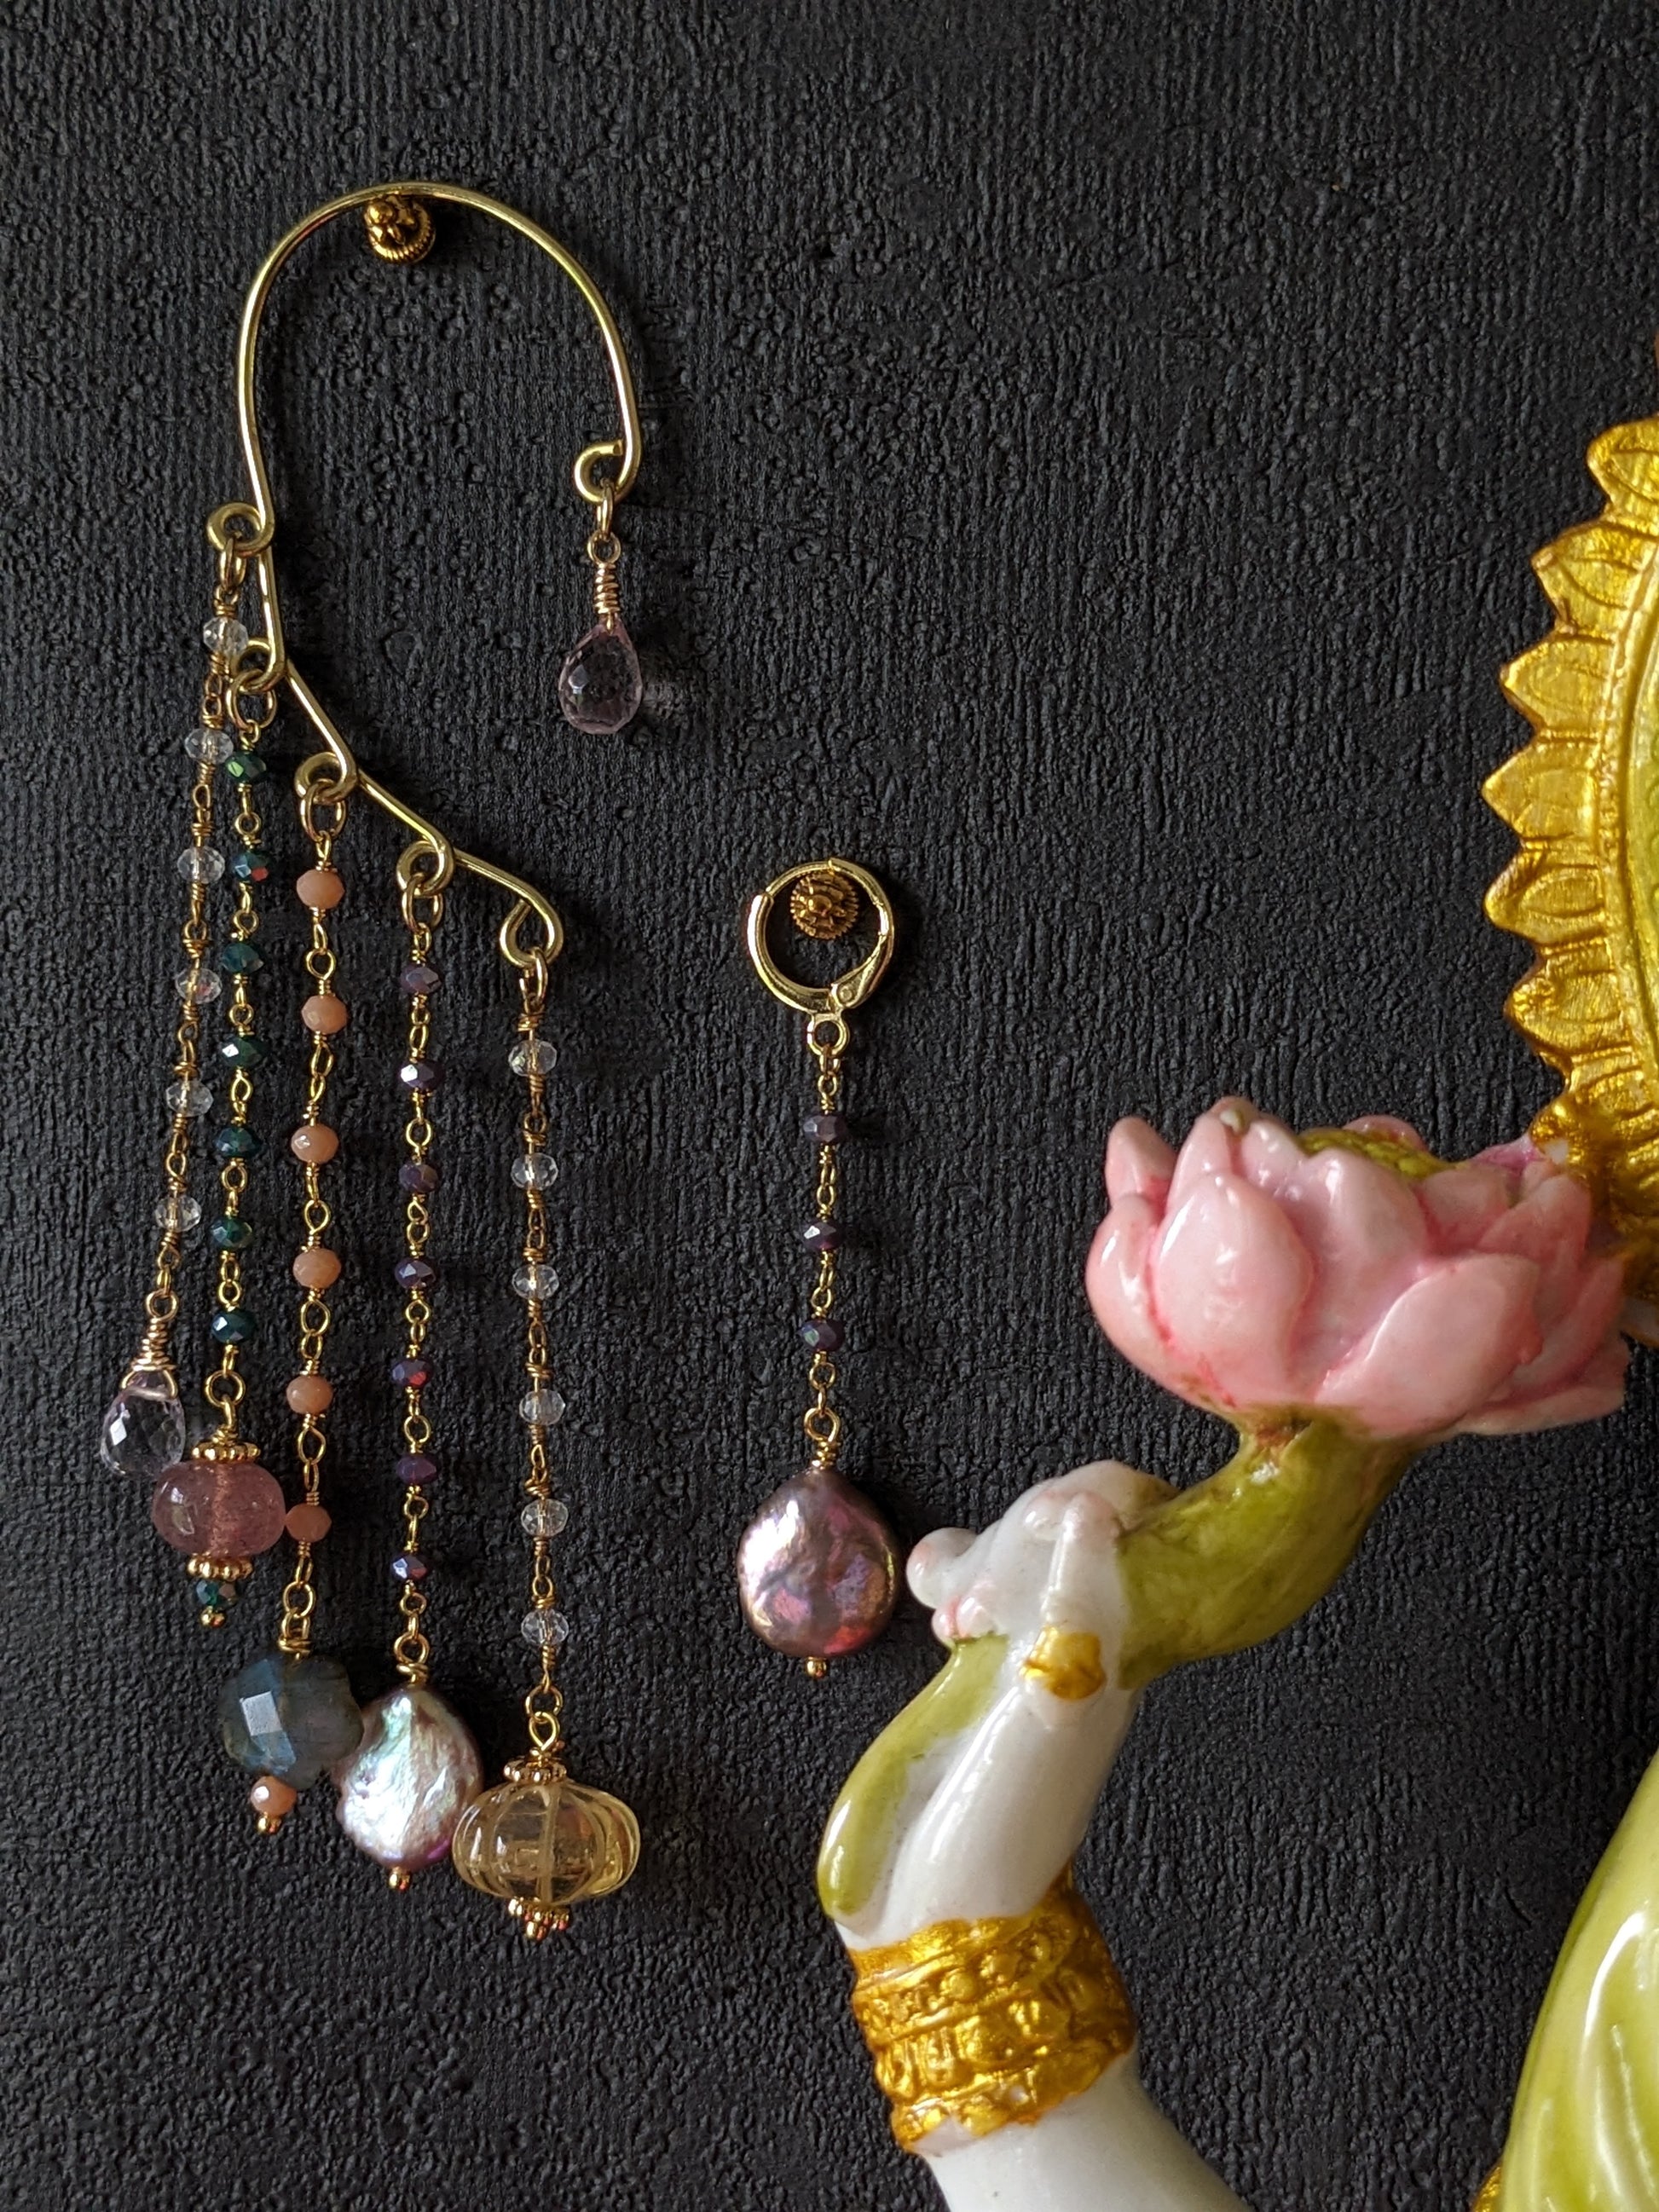 Une paire de boucles d'oreilles pendantes 'Kalamkari', magnifiquement ornées de pierres précieuses colorées comme la briolette améthyste lavande, le quartz fraise, un nuage de labradorite, des perles keshi et la citrine sculptée, reflétant le charme artisanal unique de Jaipur.